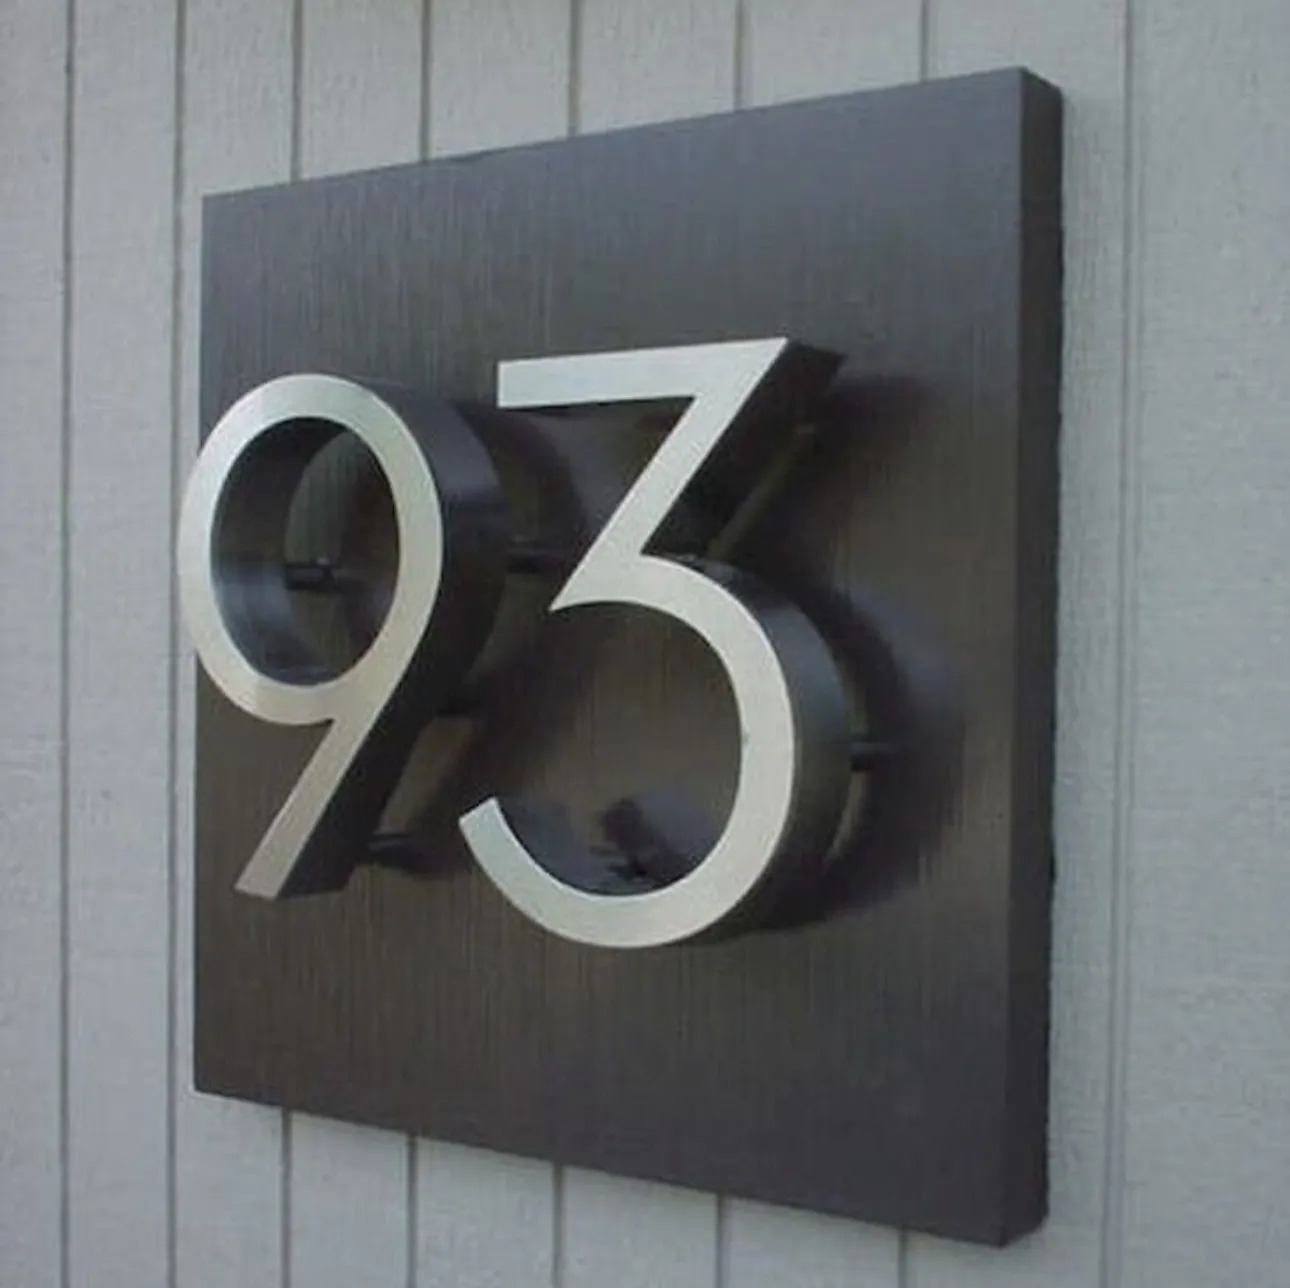 Персонализированный адресный знак современный номер дома наружная настенная табличка для дома металлическая табличка с номером